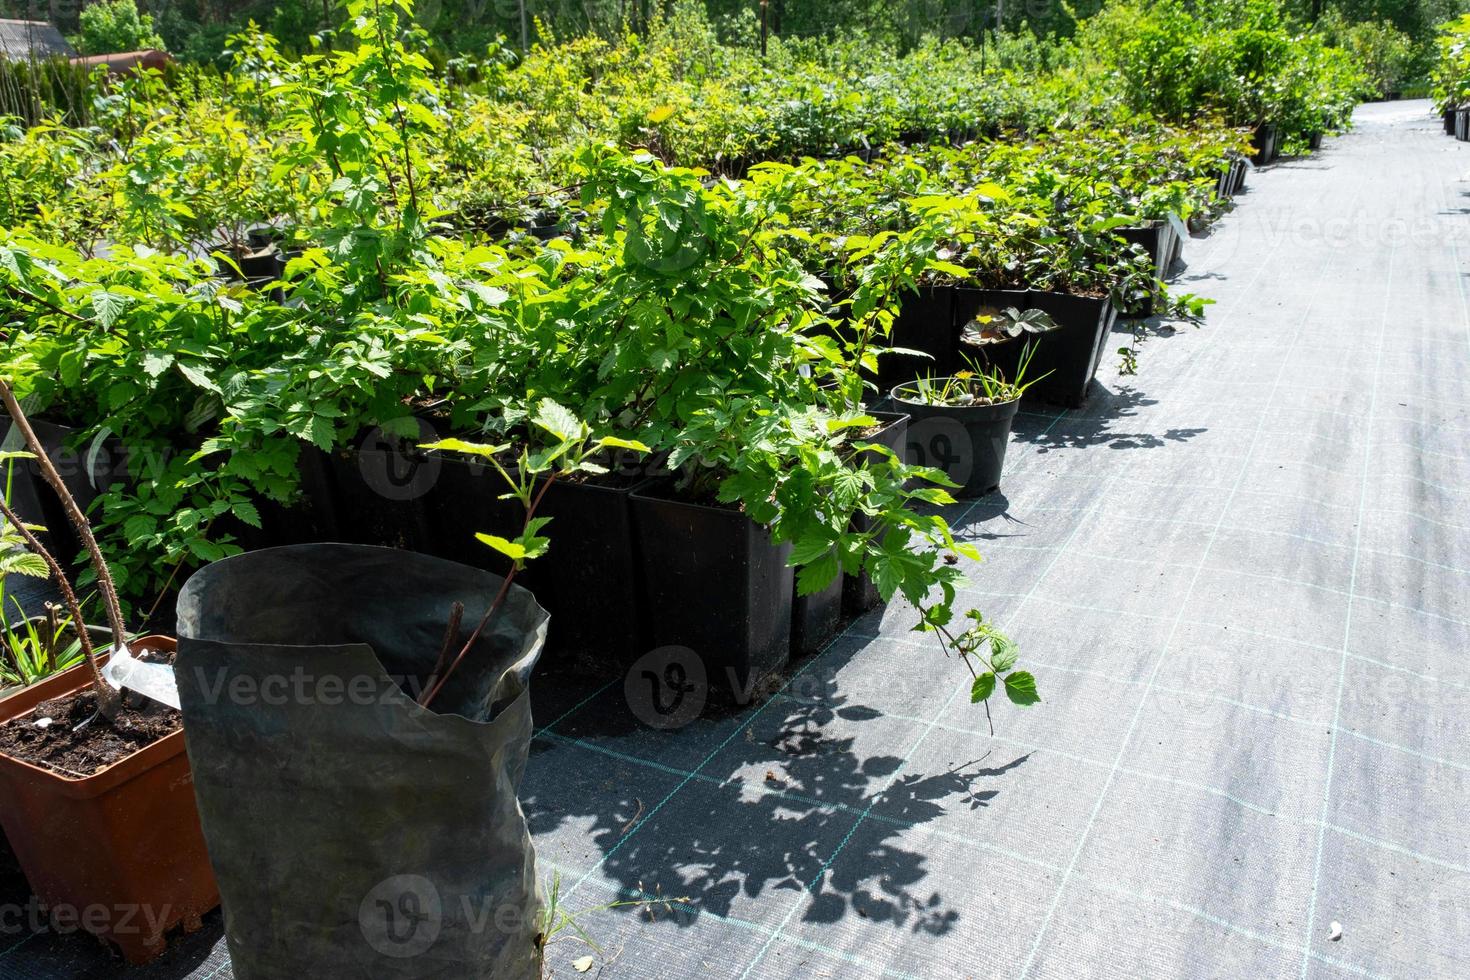 barnkammare av frukt och bär träd och buskar för plantering på en trädgård komplott i de trädgård foto